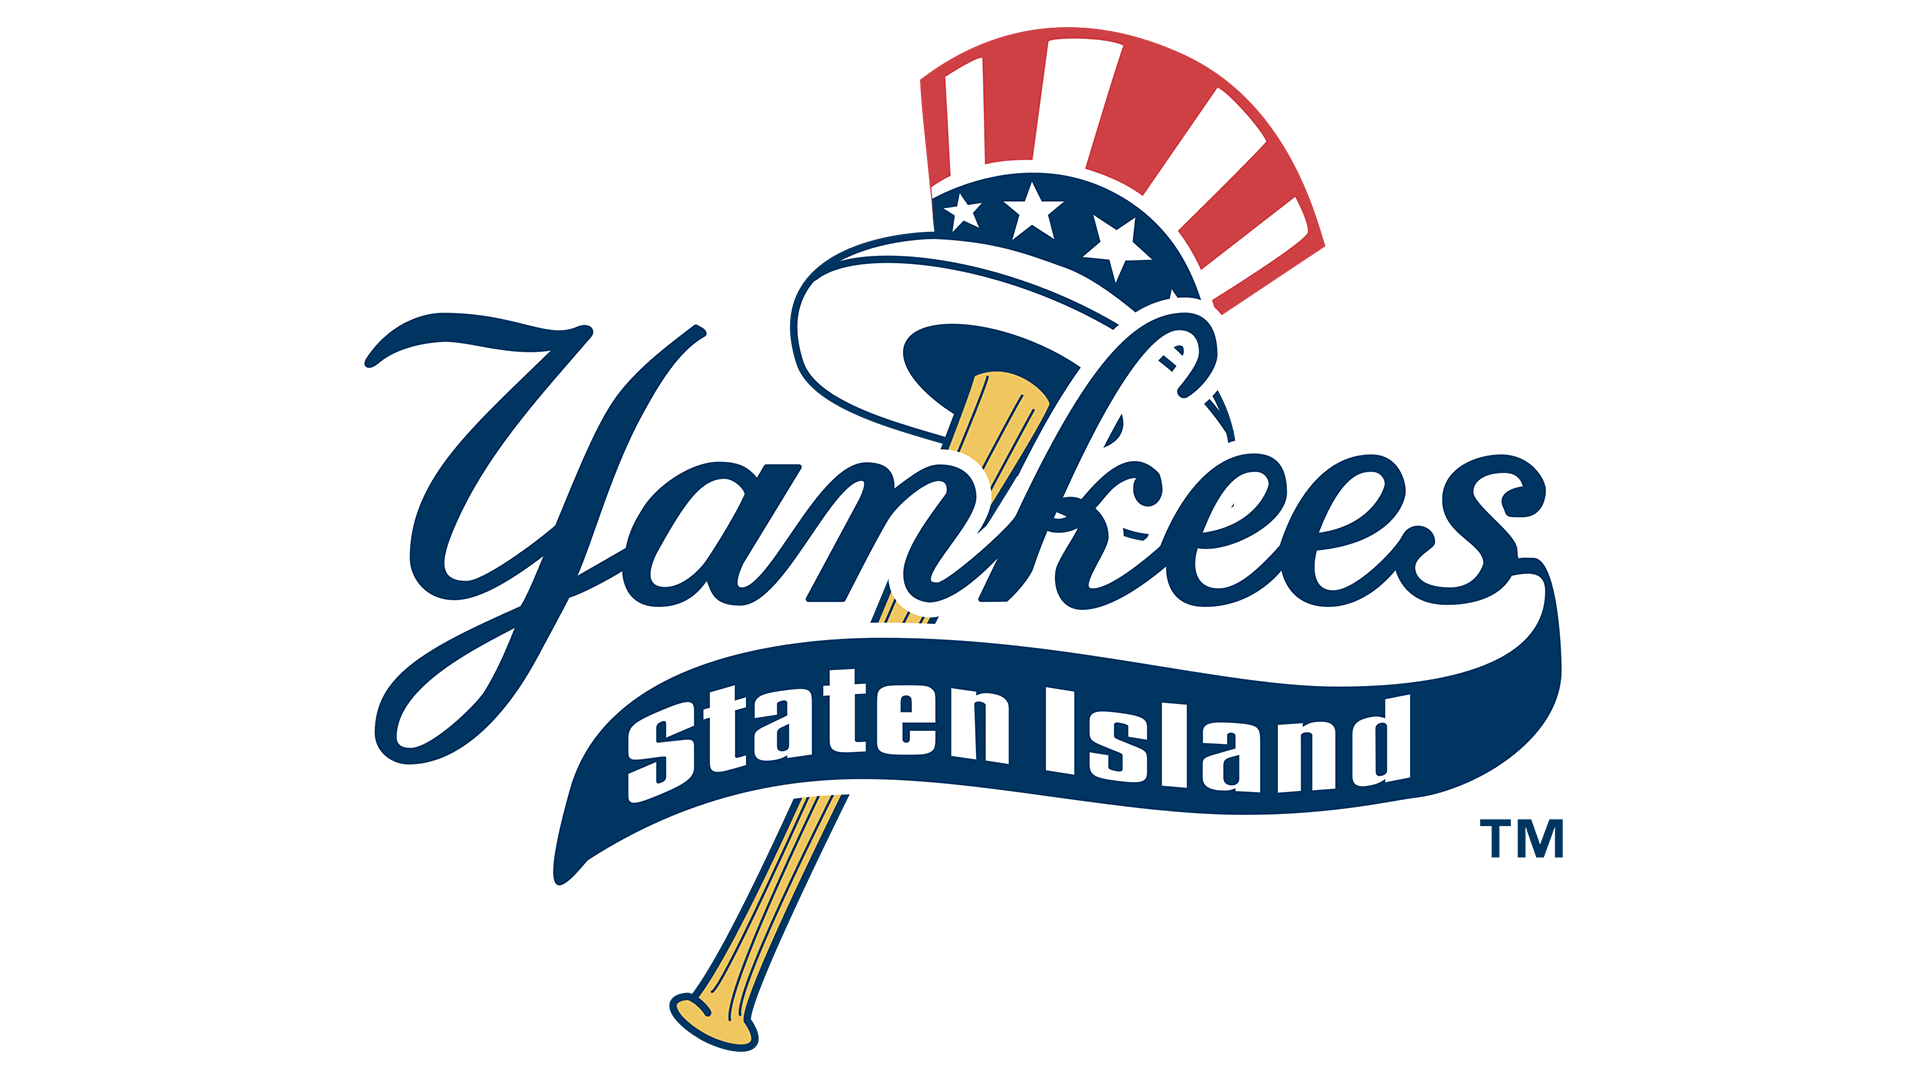 Yankee Logo PNG Image HD